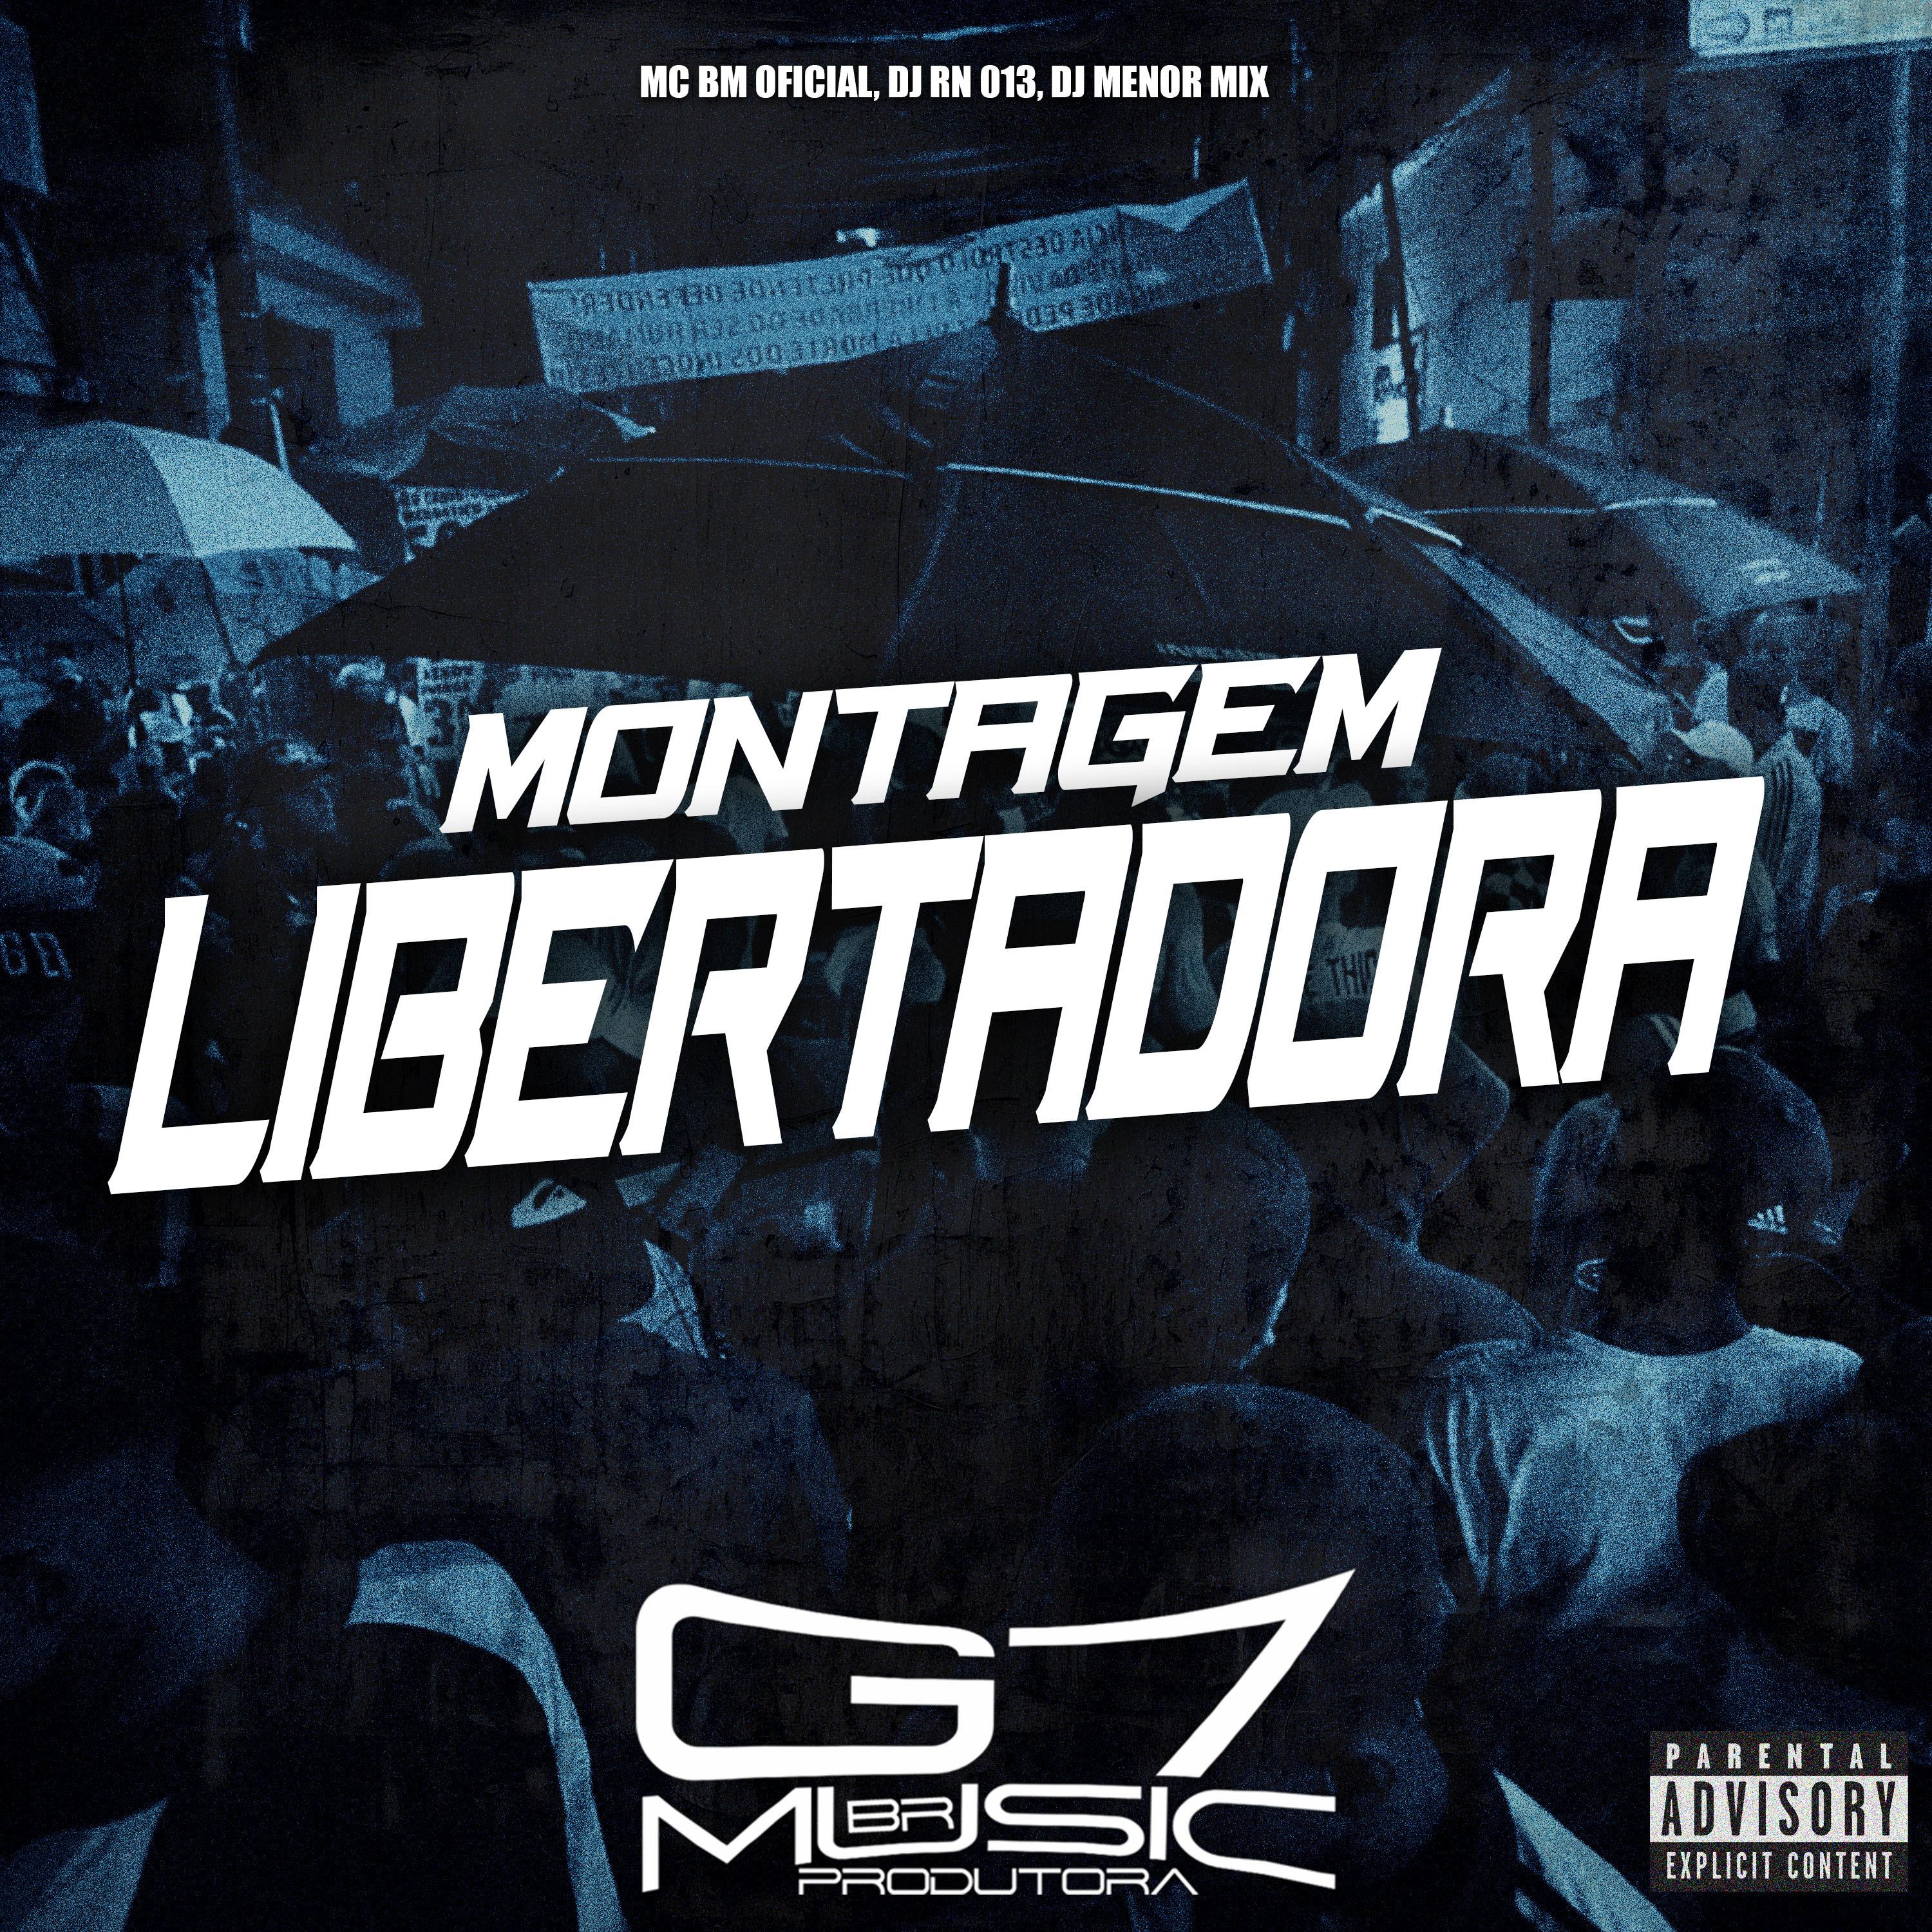 MC BM OFICIAL - Montagem Libertadora